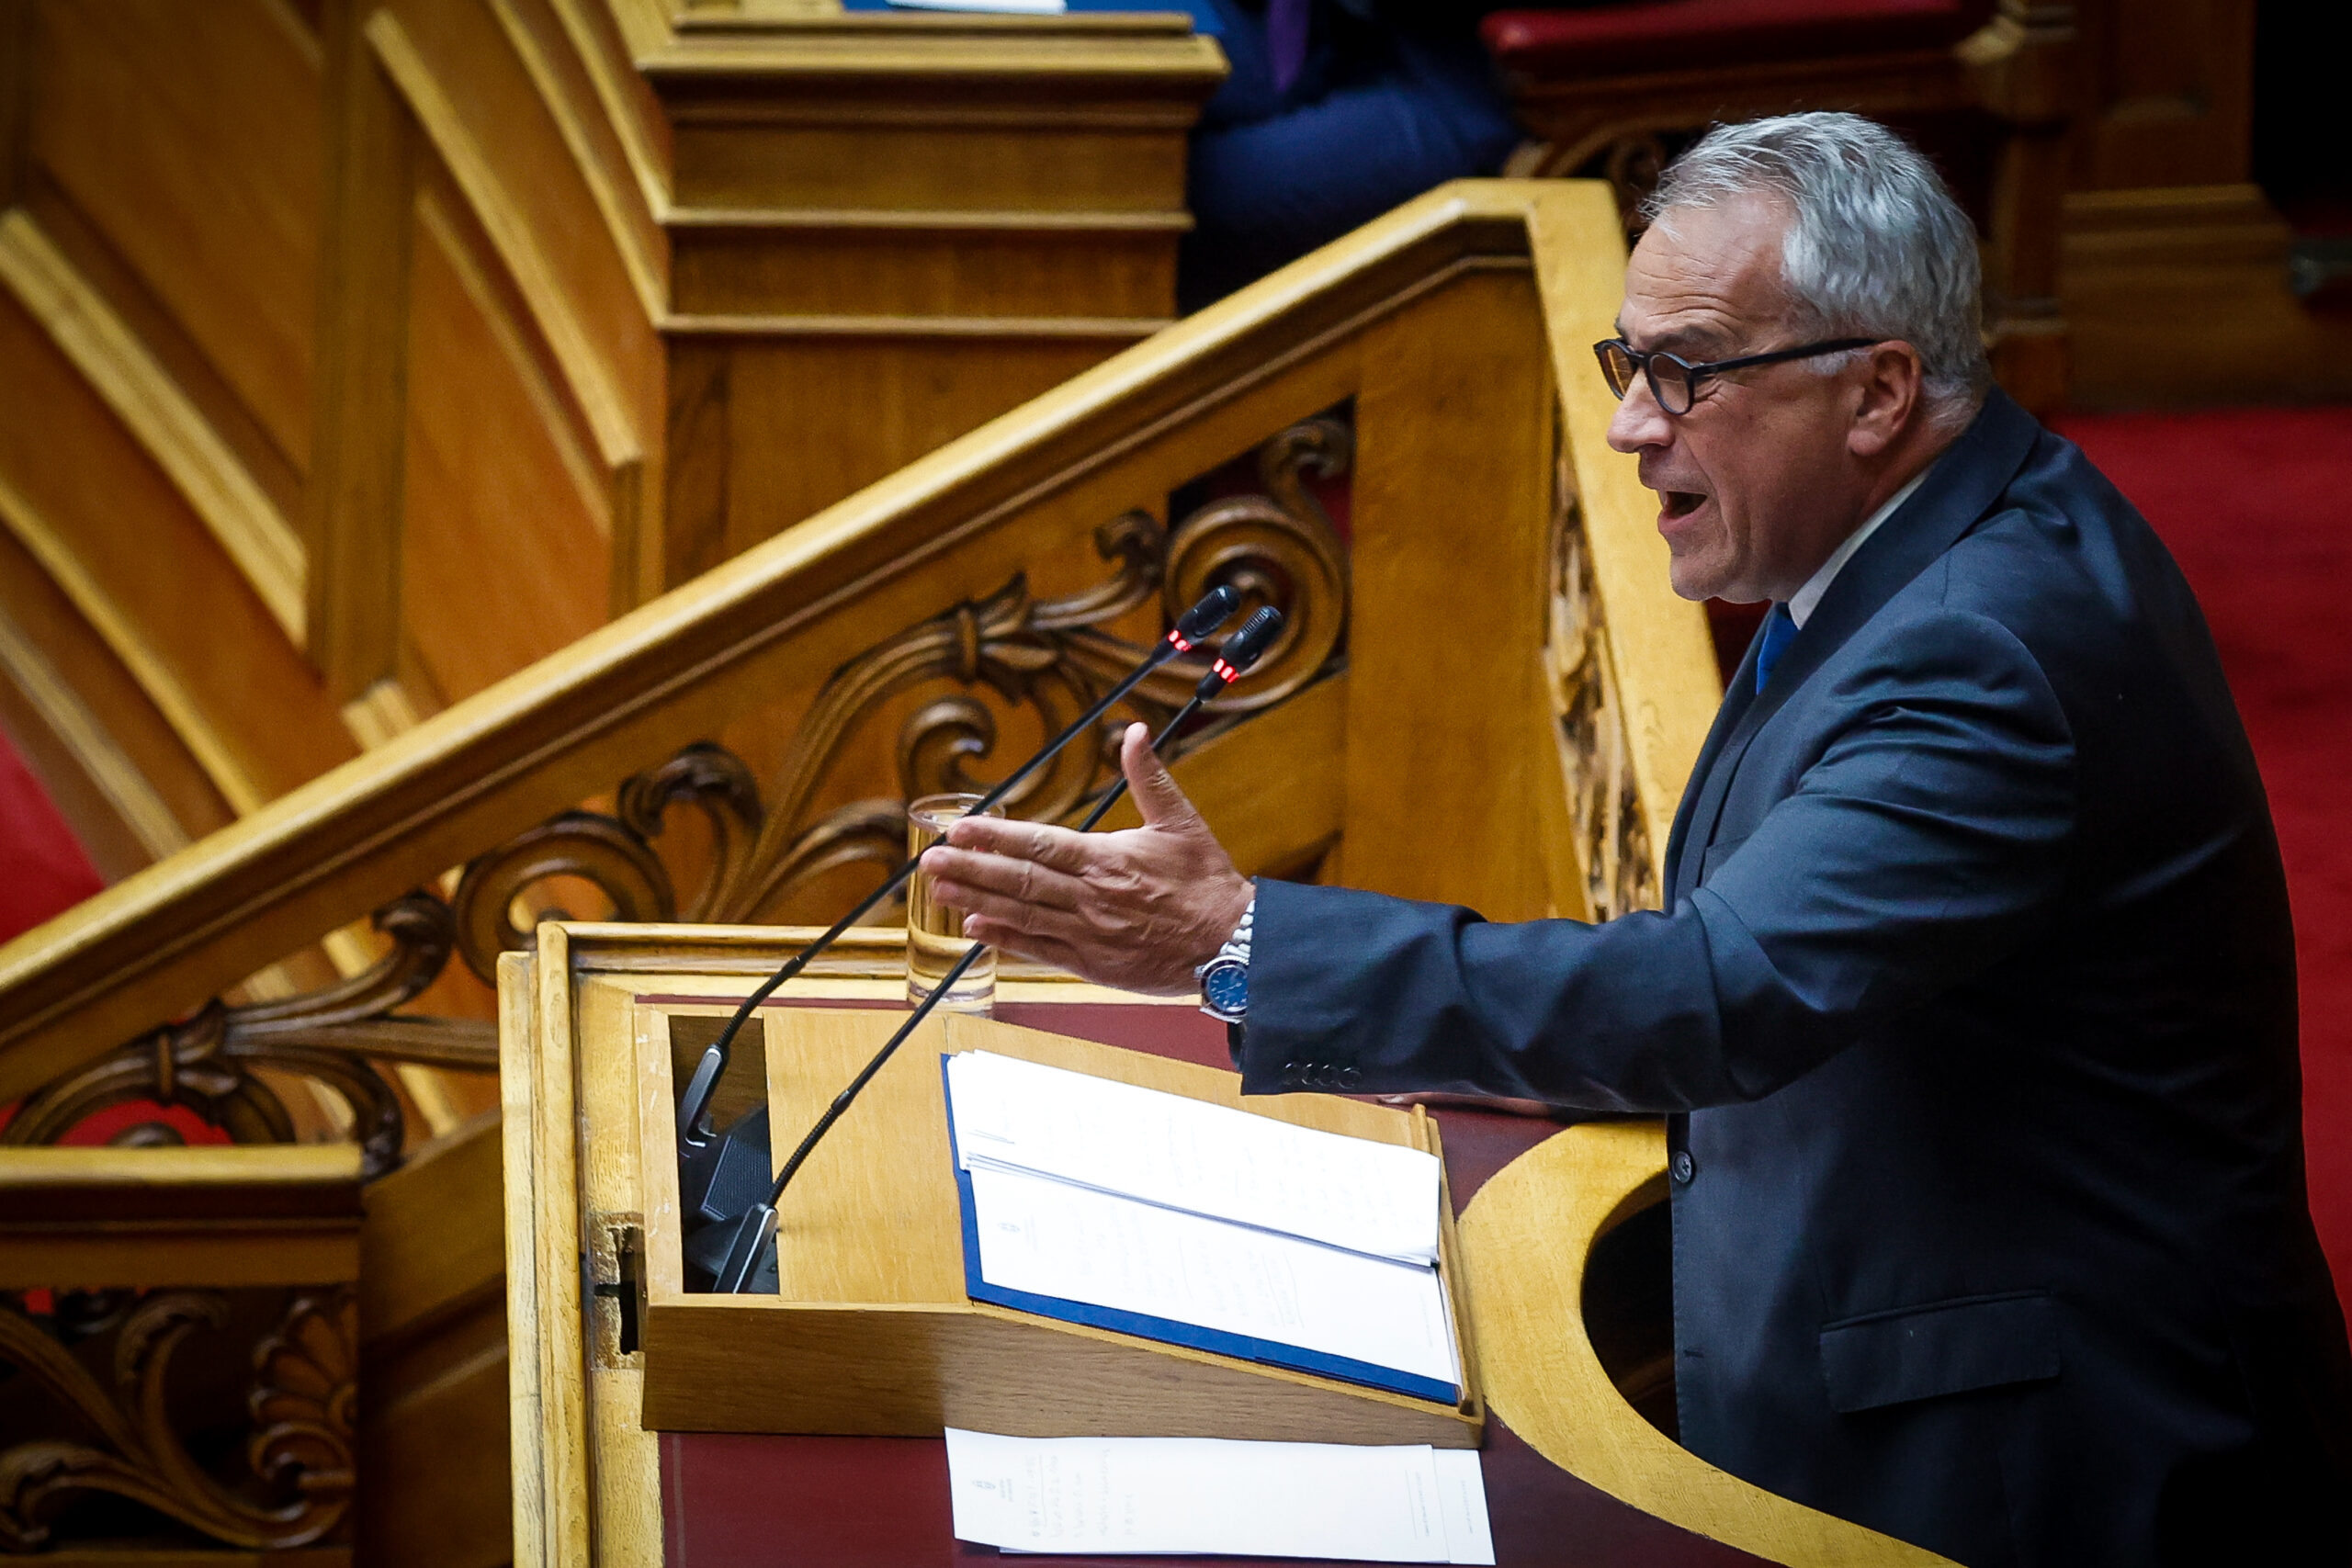 Μ. Βορίδης: Ο πρωθυπουργός παρουσίασε στις προγραμματικές δηλώσεις «όραμα ελευθερίας και υπεύθυνου πατριωτισμού»